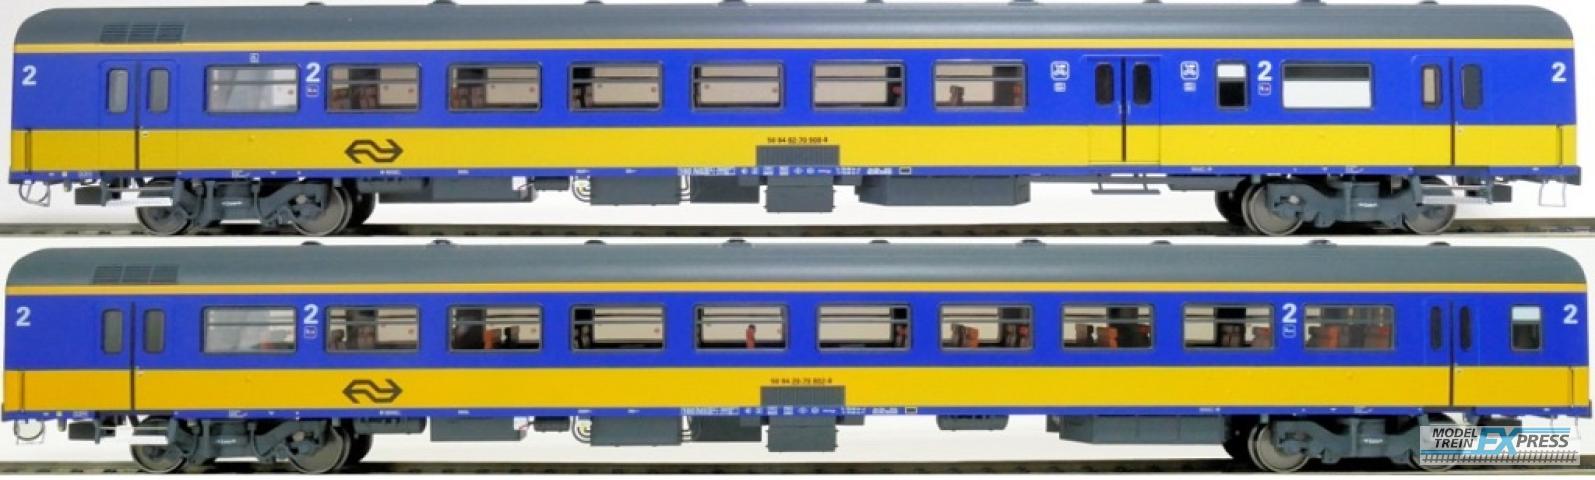 Exact-train 11060 2er-Set NS ICR (Originalversion) für den Nachverkehr nach Belgien, Deutschland und Luxembourg Gepäckwagen BKD und Reisezugwagen B ( Alte Farbe Gelb / Blau), Ep. IV